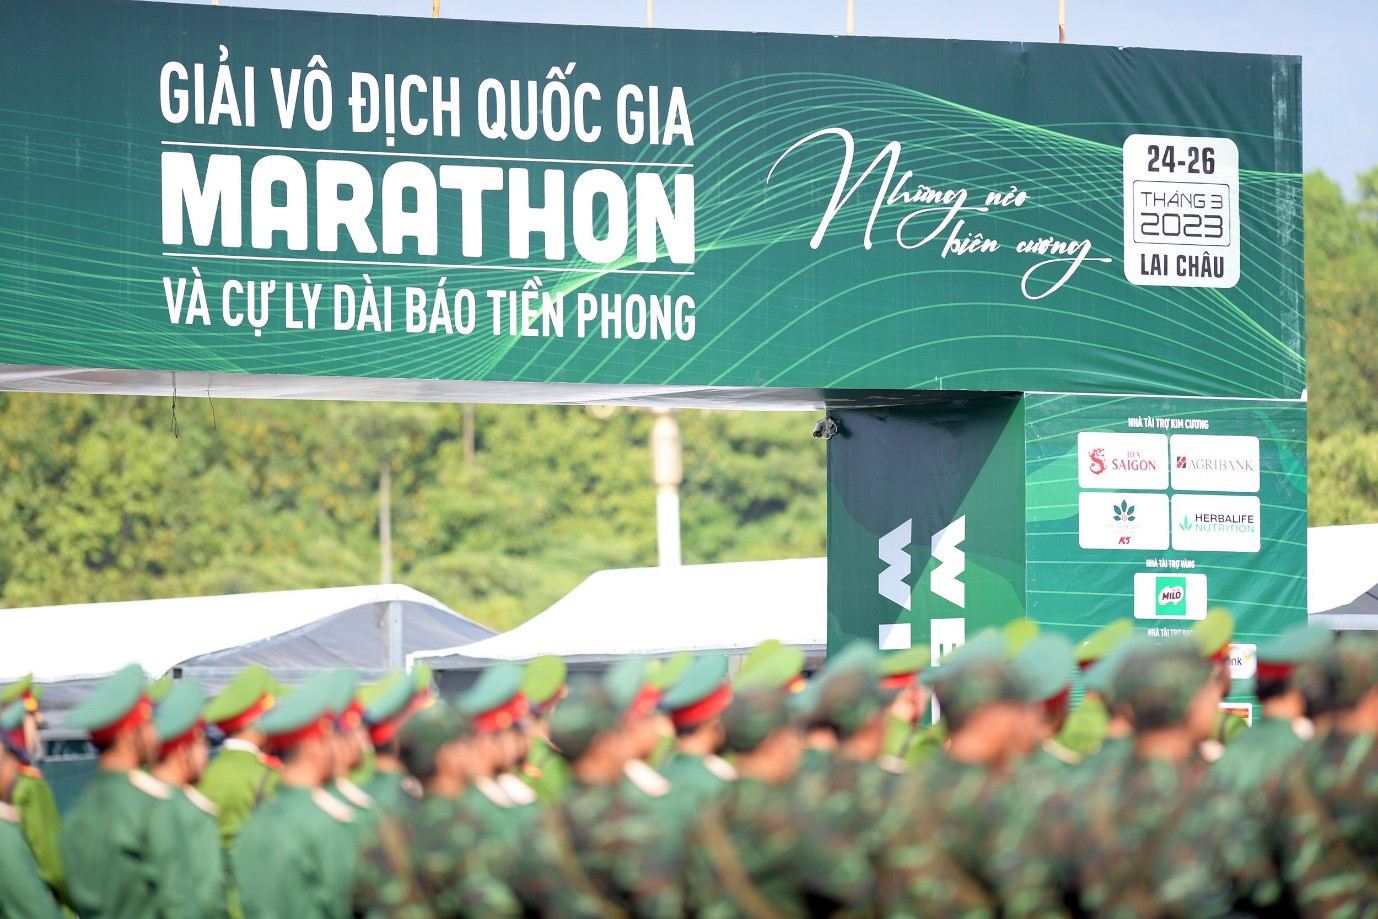 Bia Saigon đồng hành cùng Tiền Phong Marathon, cam kết thúc đẩy sống lành mạnh